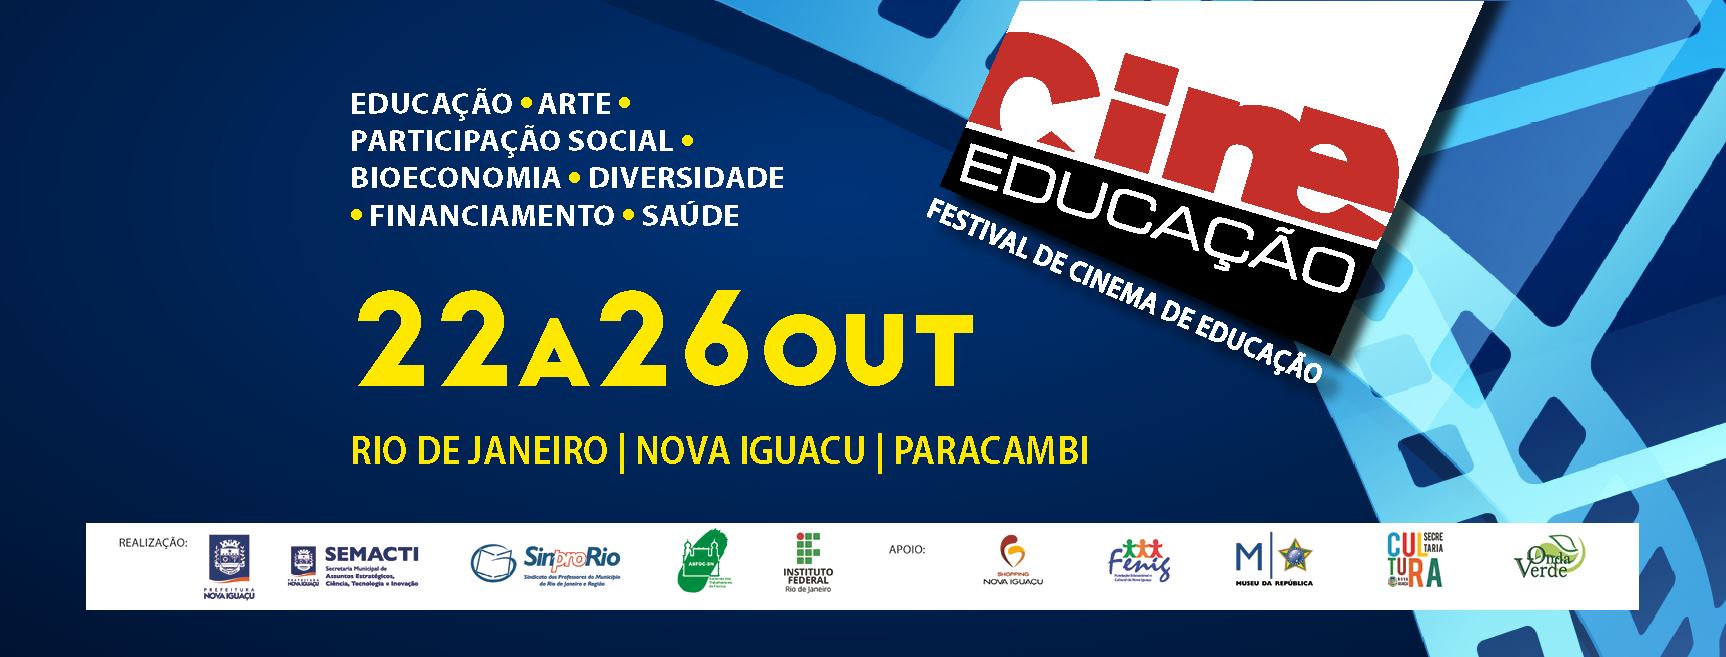 Cine Educação: festival de cinema de Educação de 22 a 26/10